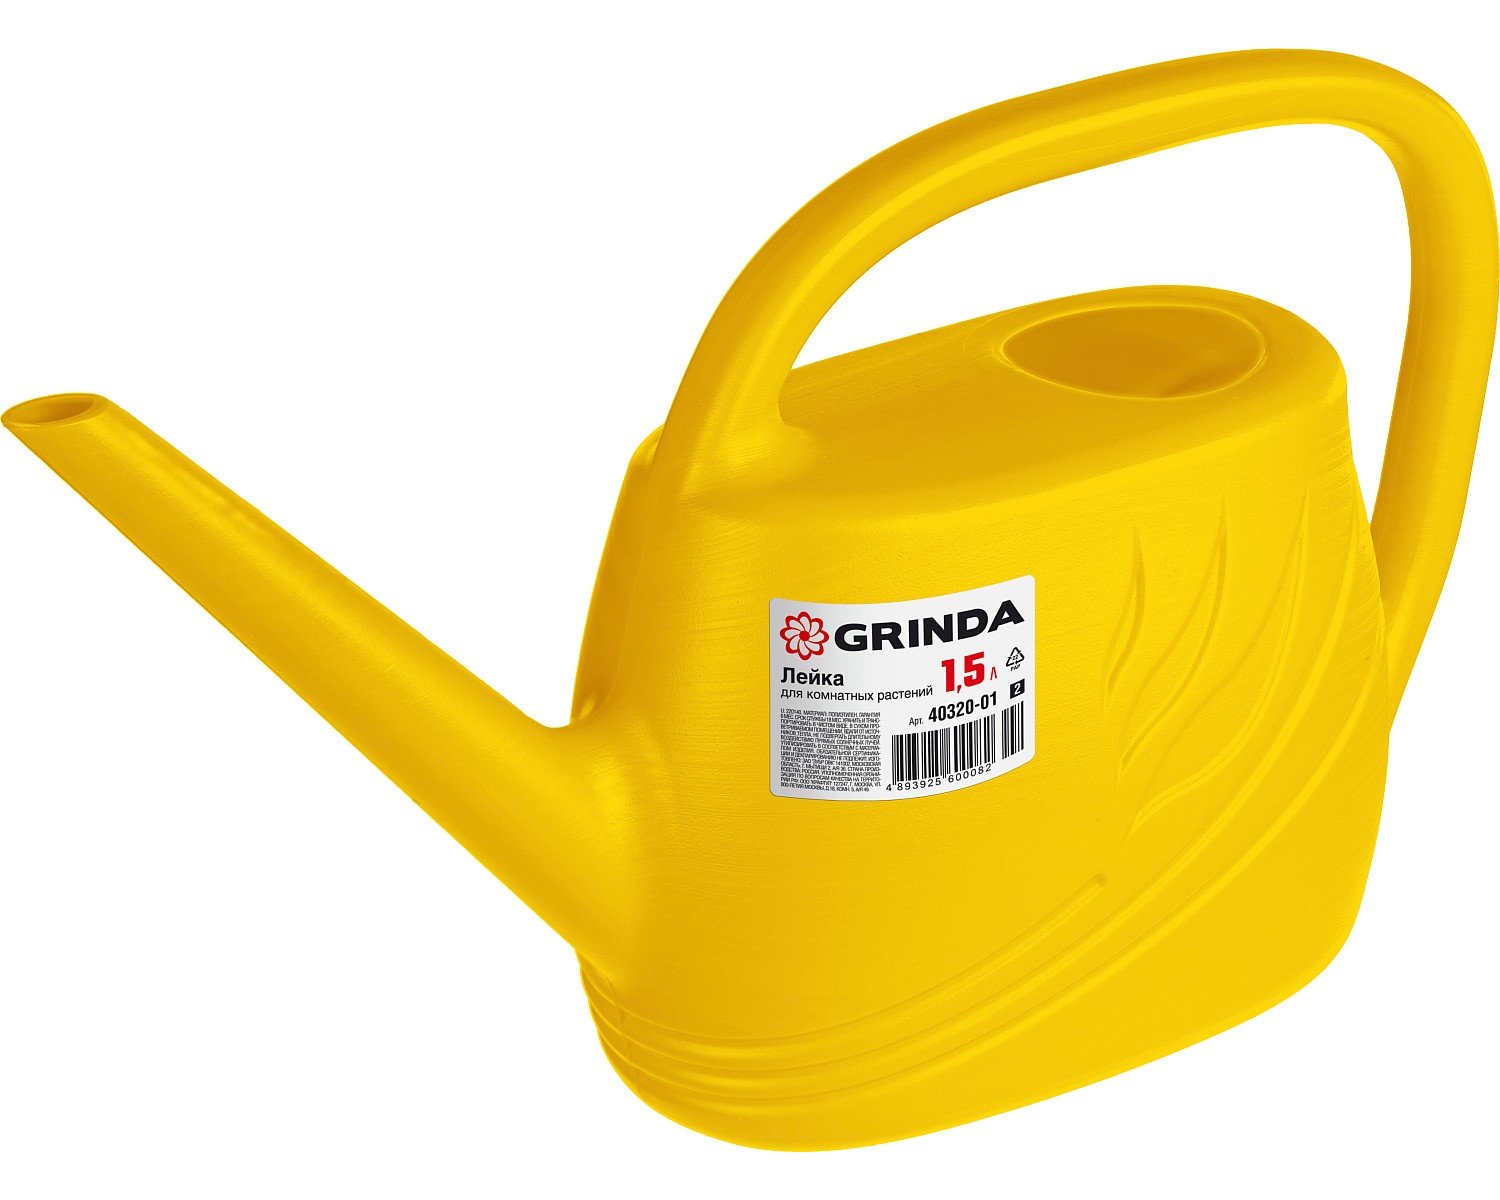     GRINDA 1,5  (40320-01_z02)